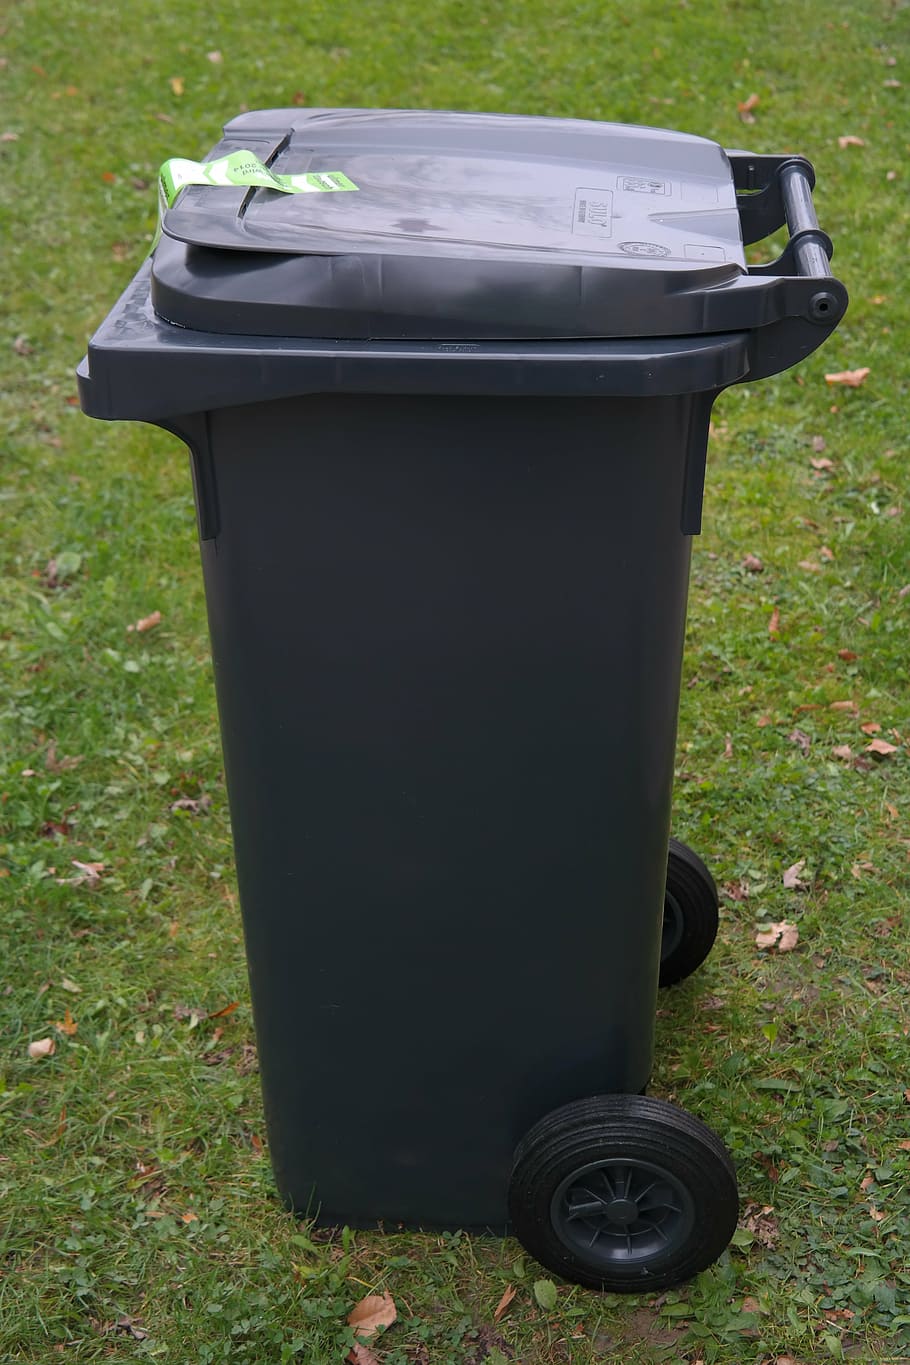 preto, lixeira, verde, grama, caixote do lixo, lixo, tonelada, caixotes do lixo, tonelada de plástico, grandes recipientes para lixo